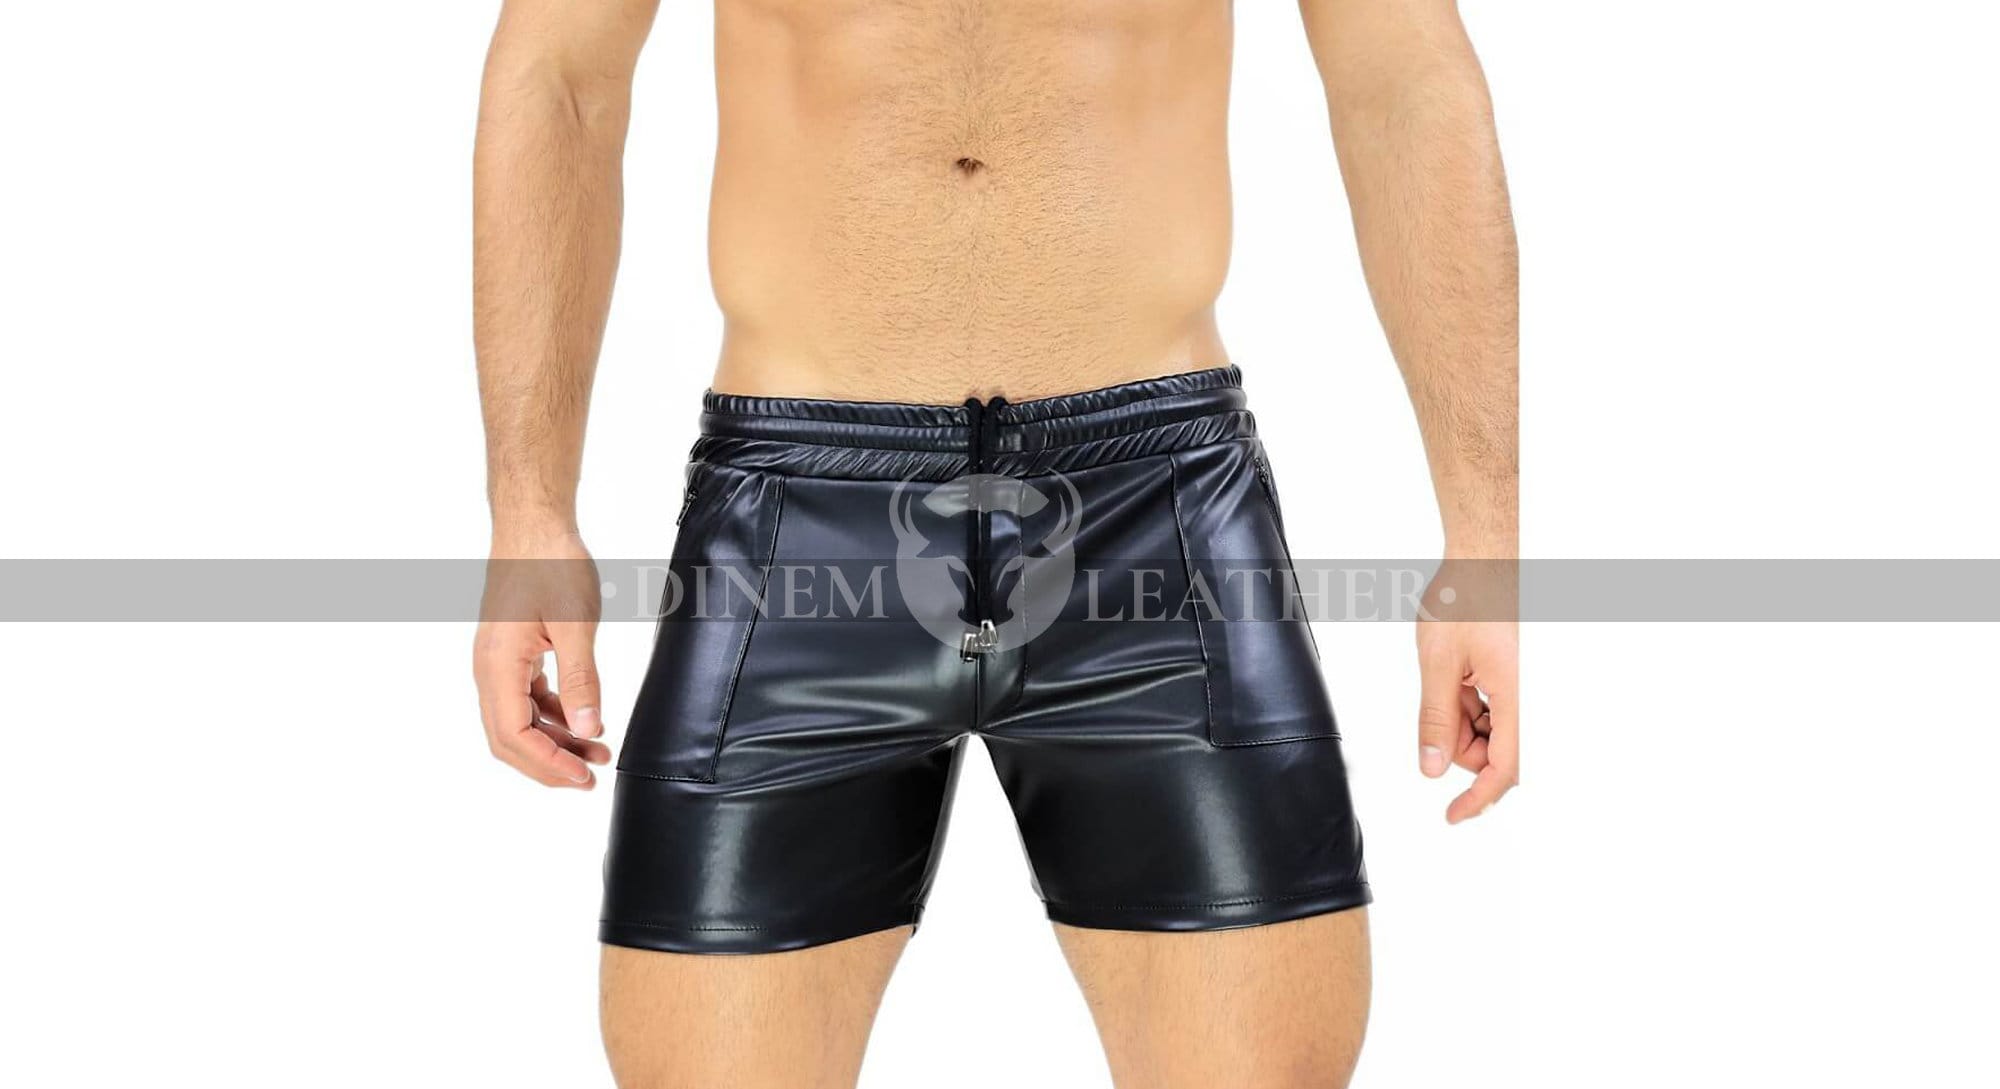 Men's Leather Shorts Genuine Leather Shiny Shorts | Etsy